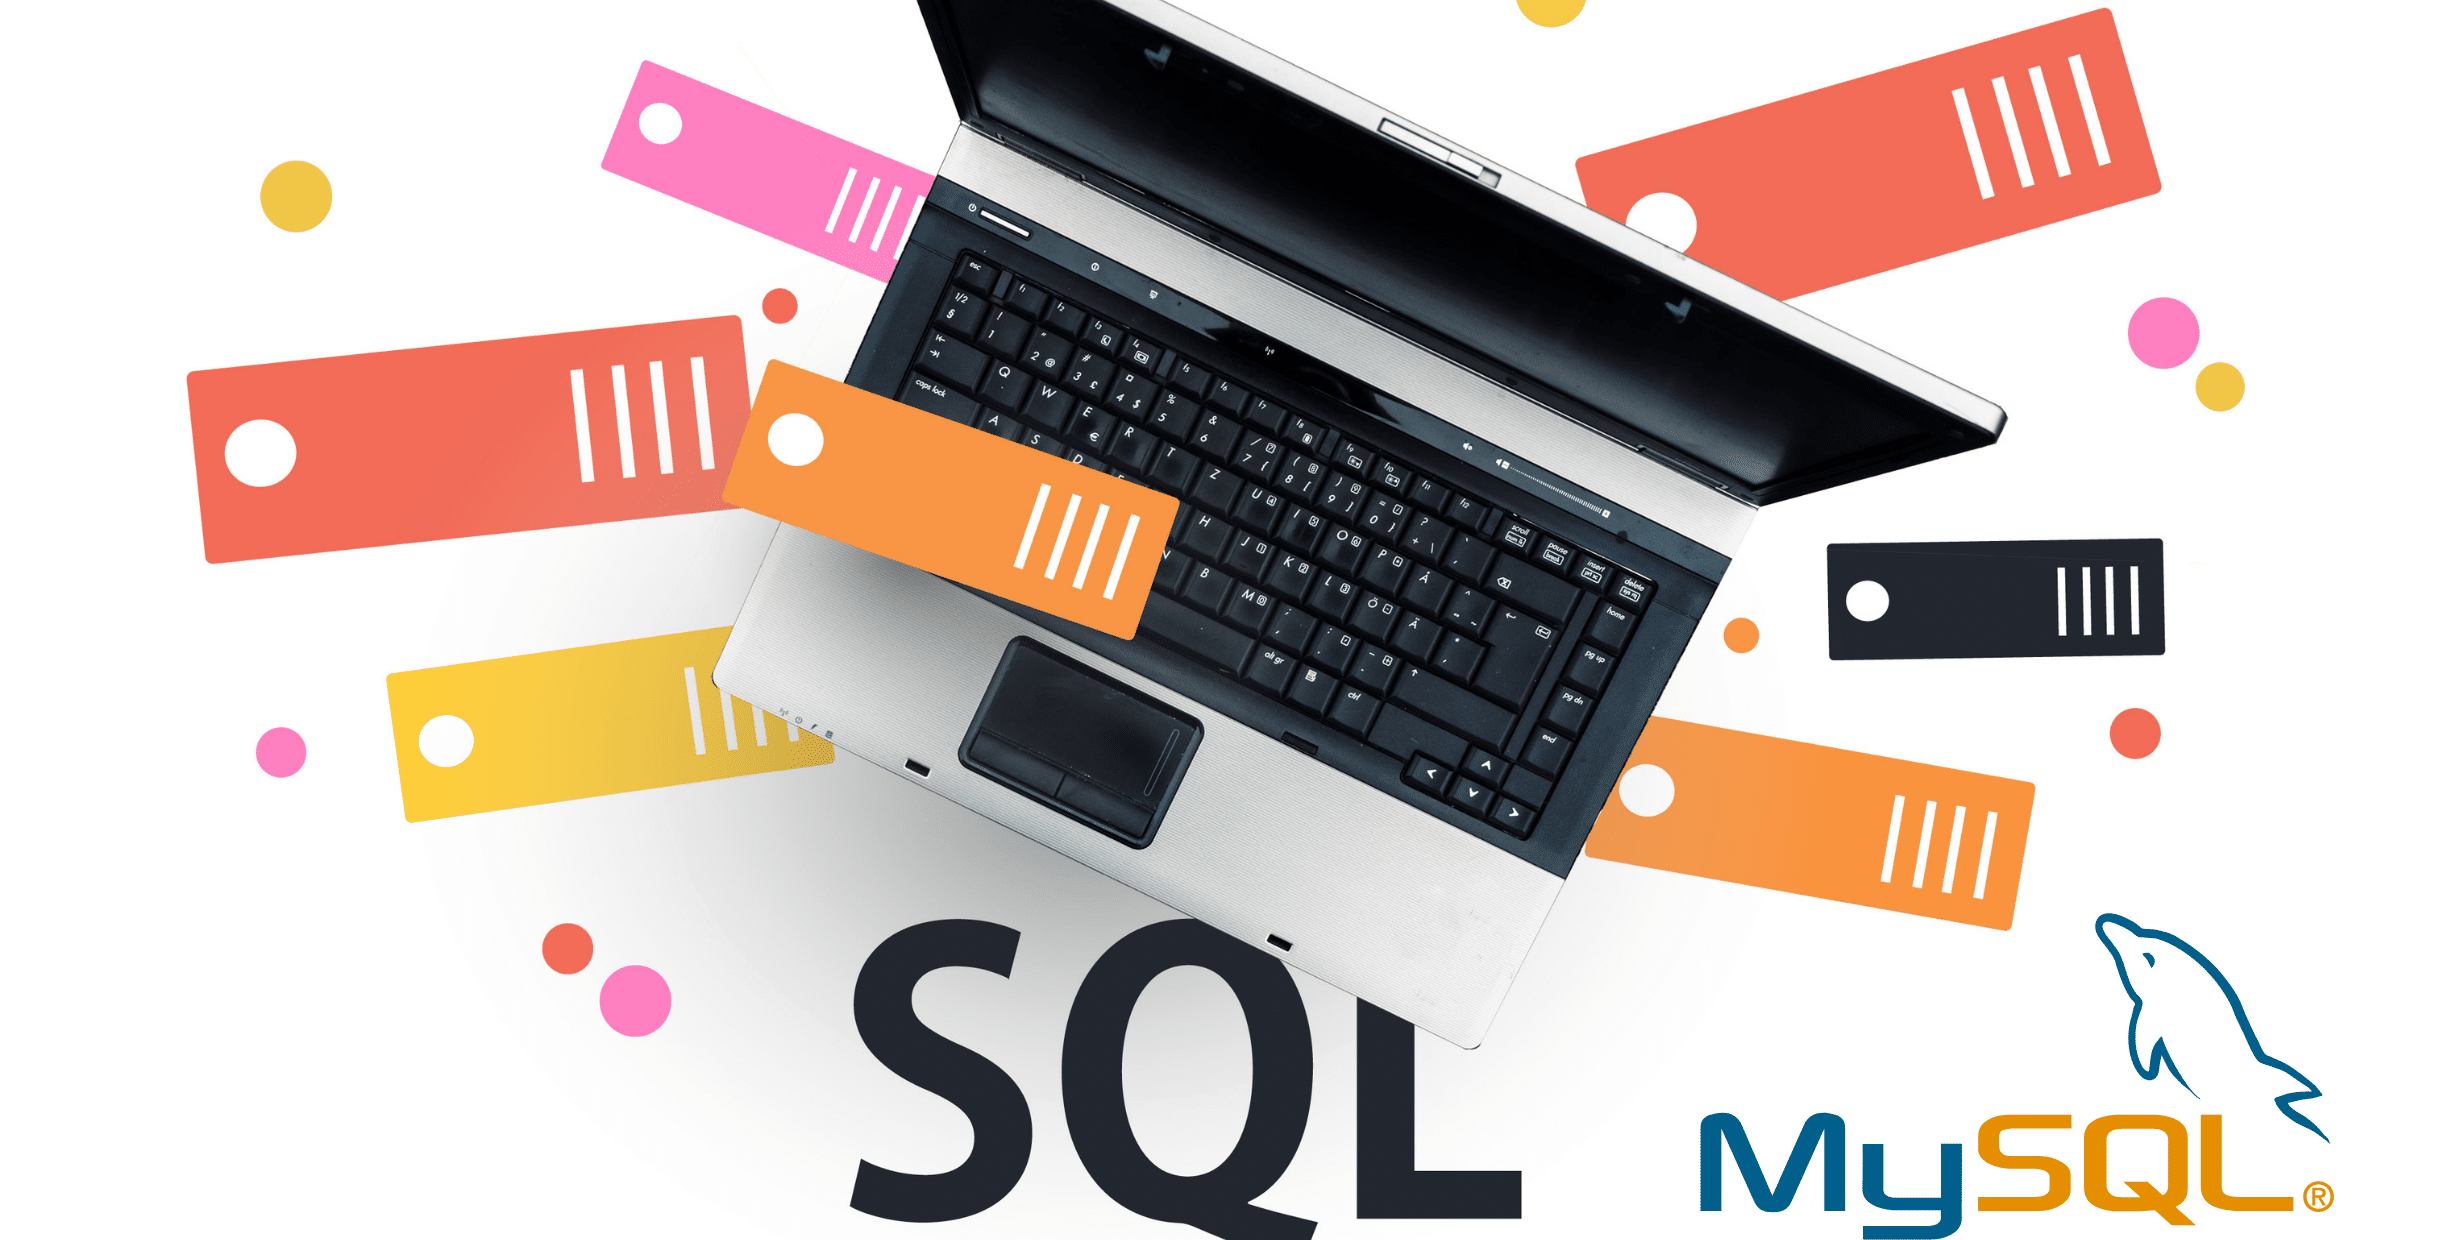 Servidores inseguros do Microsoft SQL e MySQL atingidos pelo malware Gh0stCringe